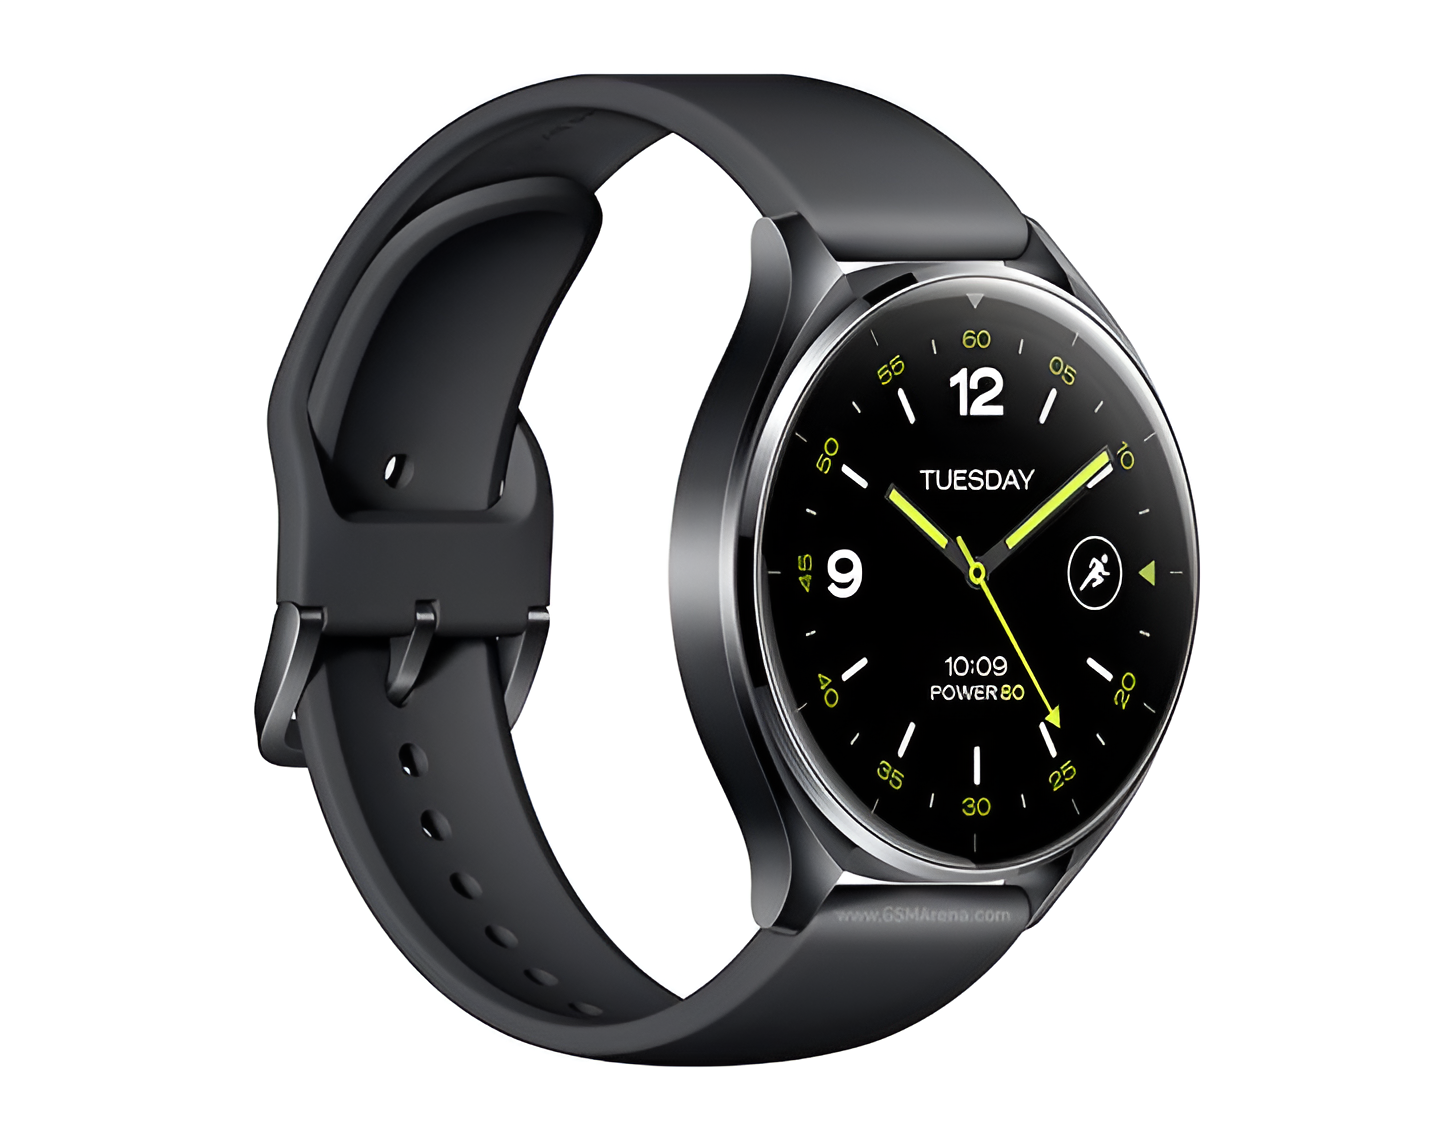 NOWOŚĆ! Xiaomi Watch S3 - Ten zegarek zapowiada się NIEŹLE